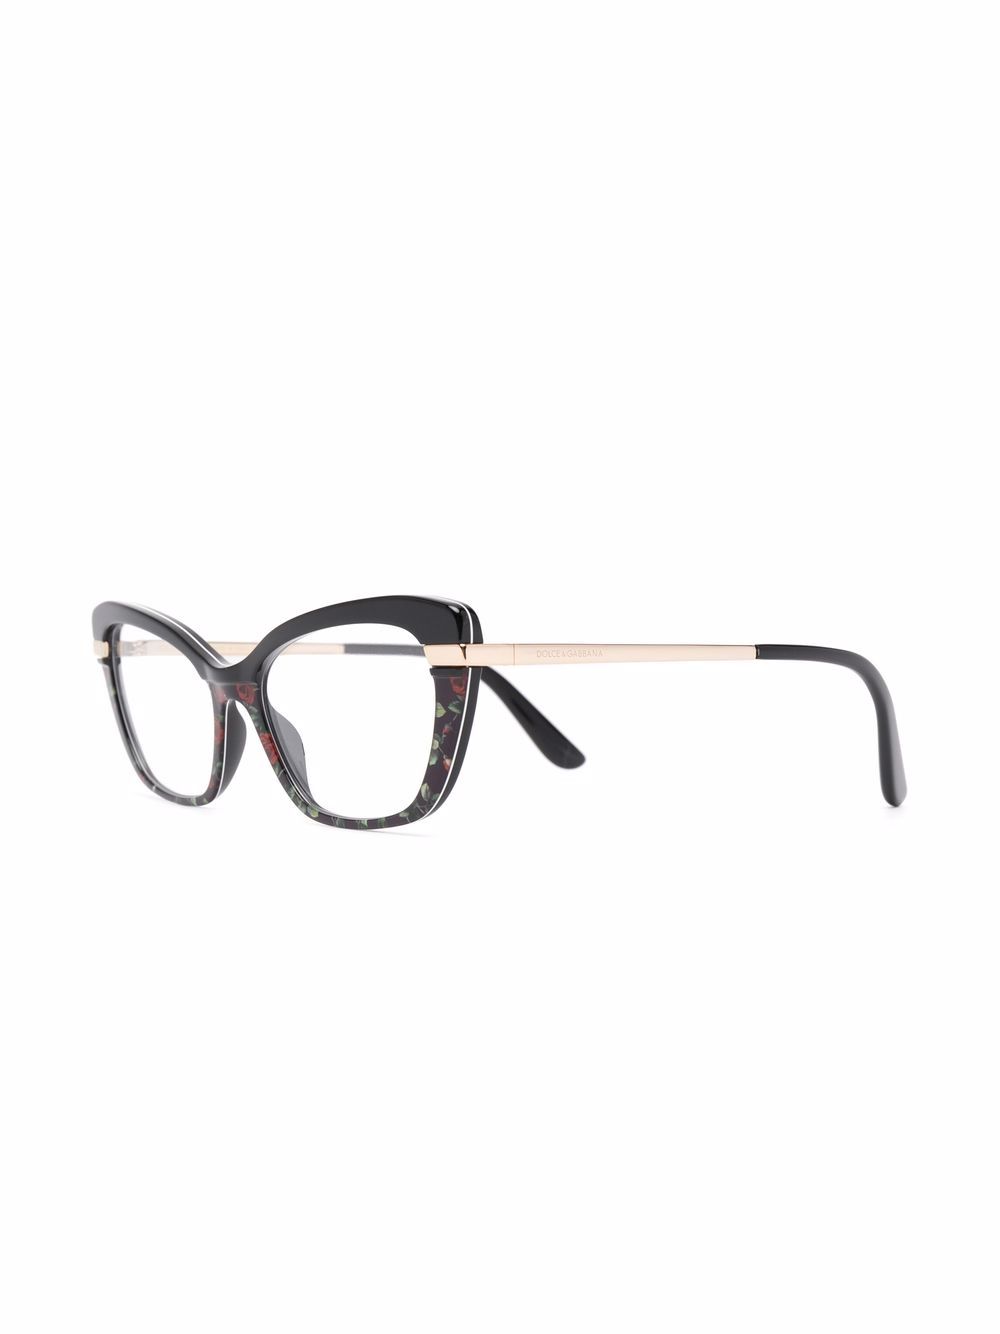 фото Dolce & gabbana eyewear очки в оправе 'кошачий глаз'